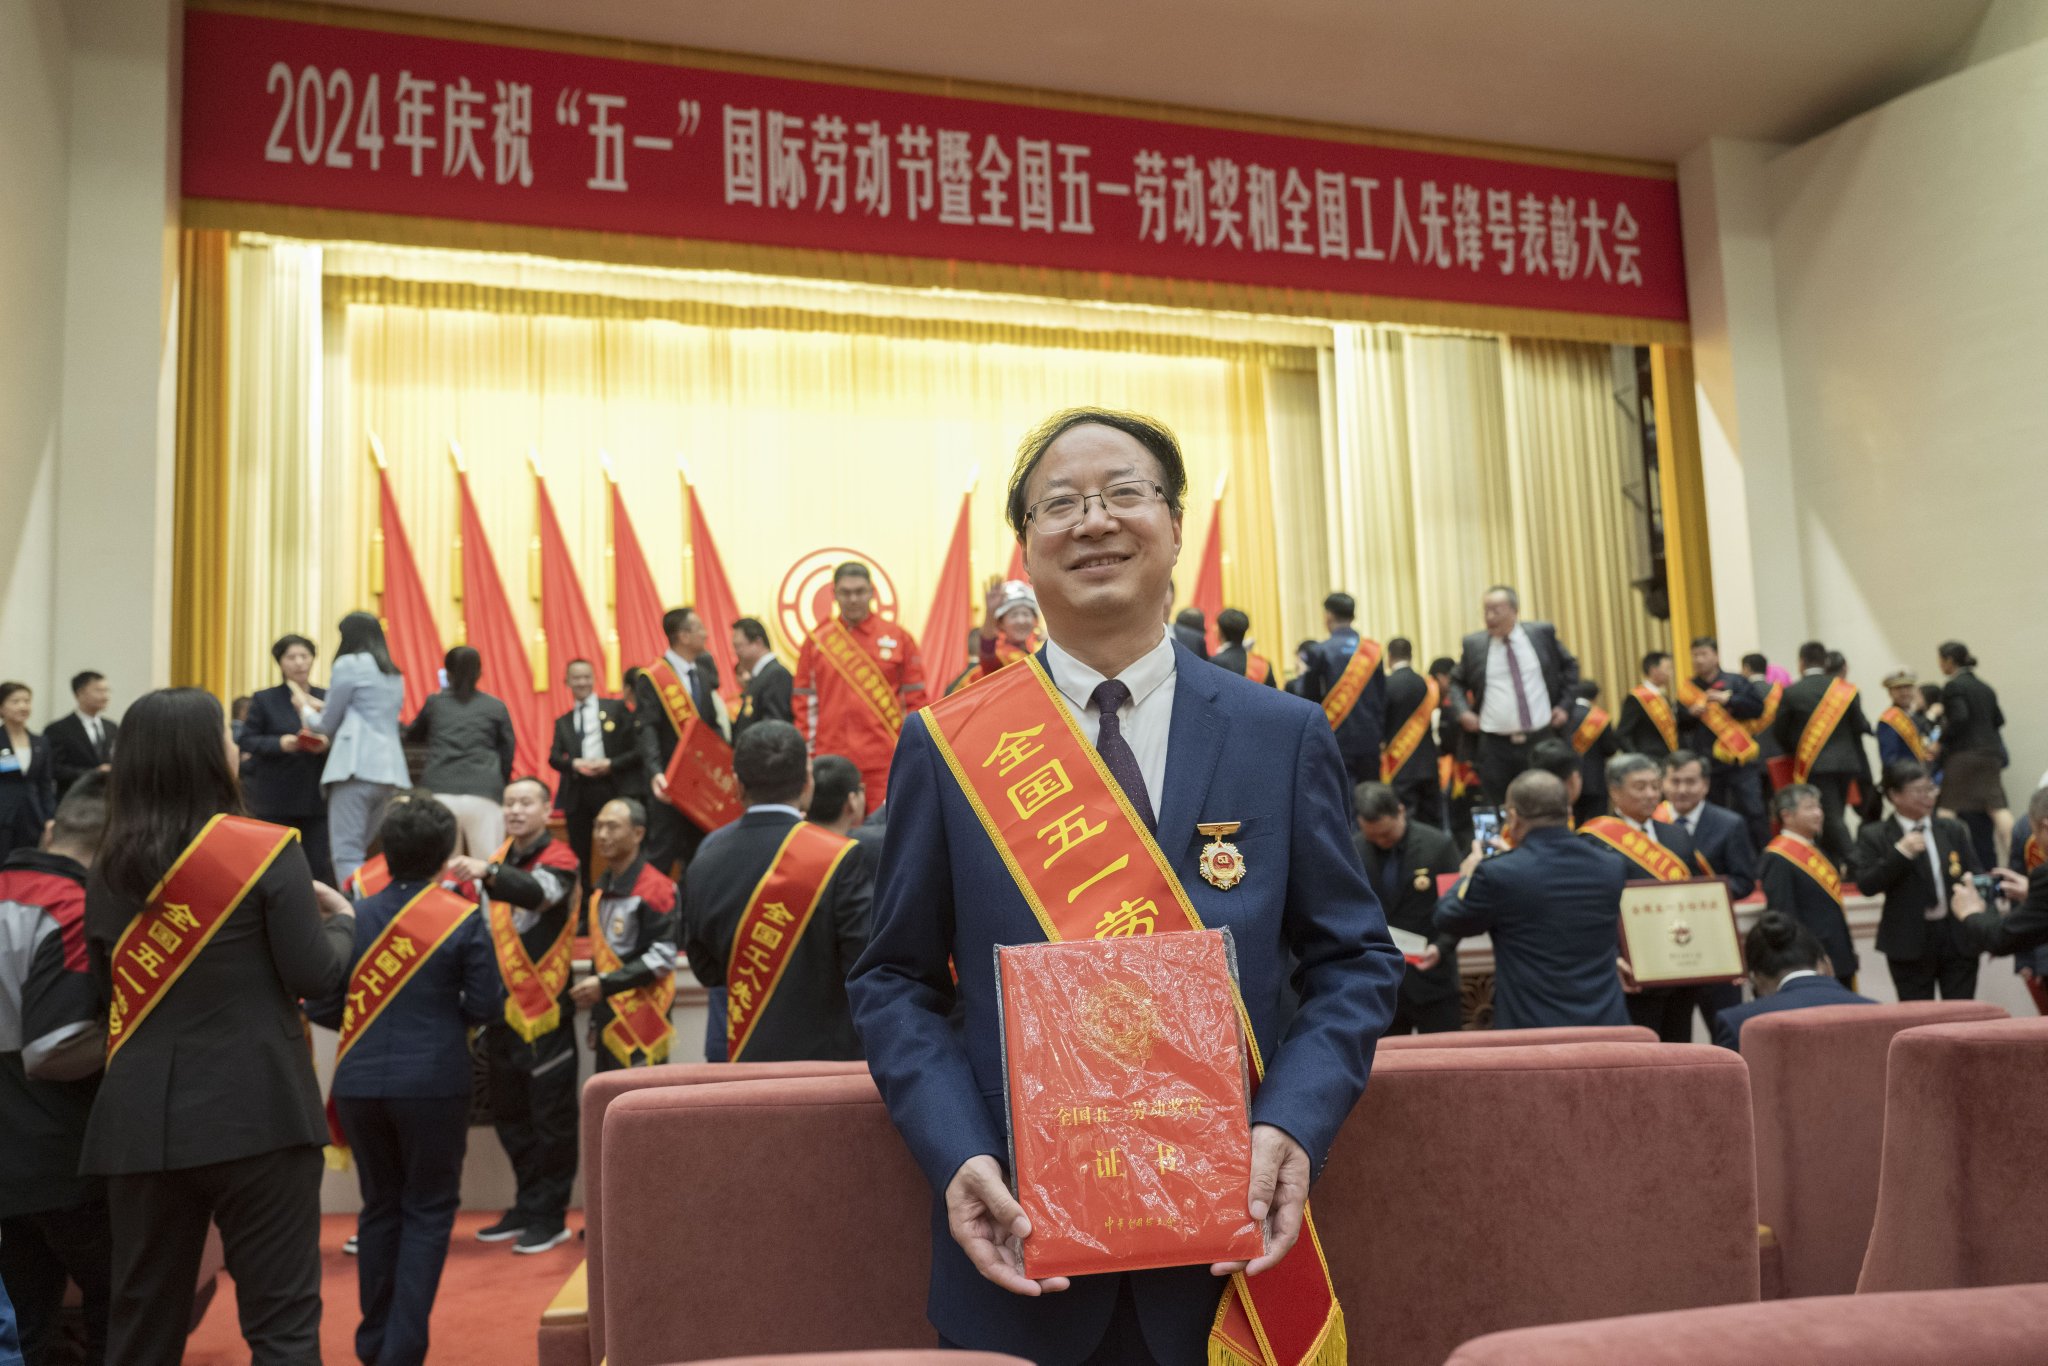 陕西省汉中市龙岗学校校长、正高级教师高翔在北京人民大会堂领取“全国五一劳动奖章”。受访者供图